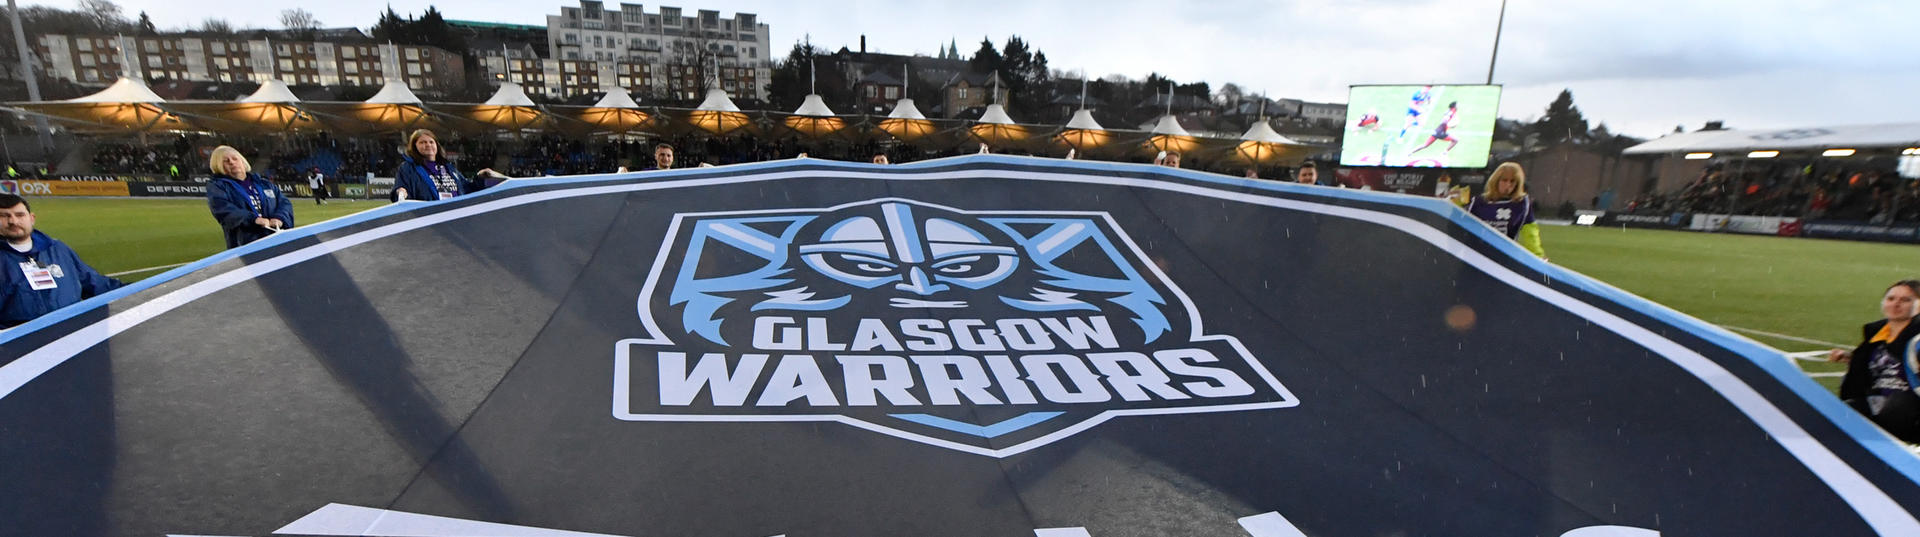 Glasgow Warriors banner